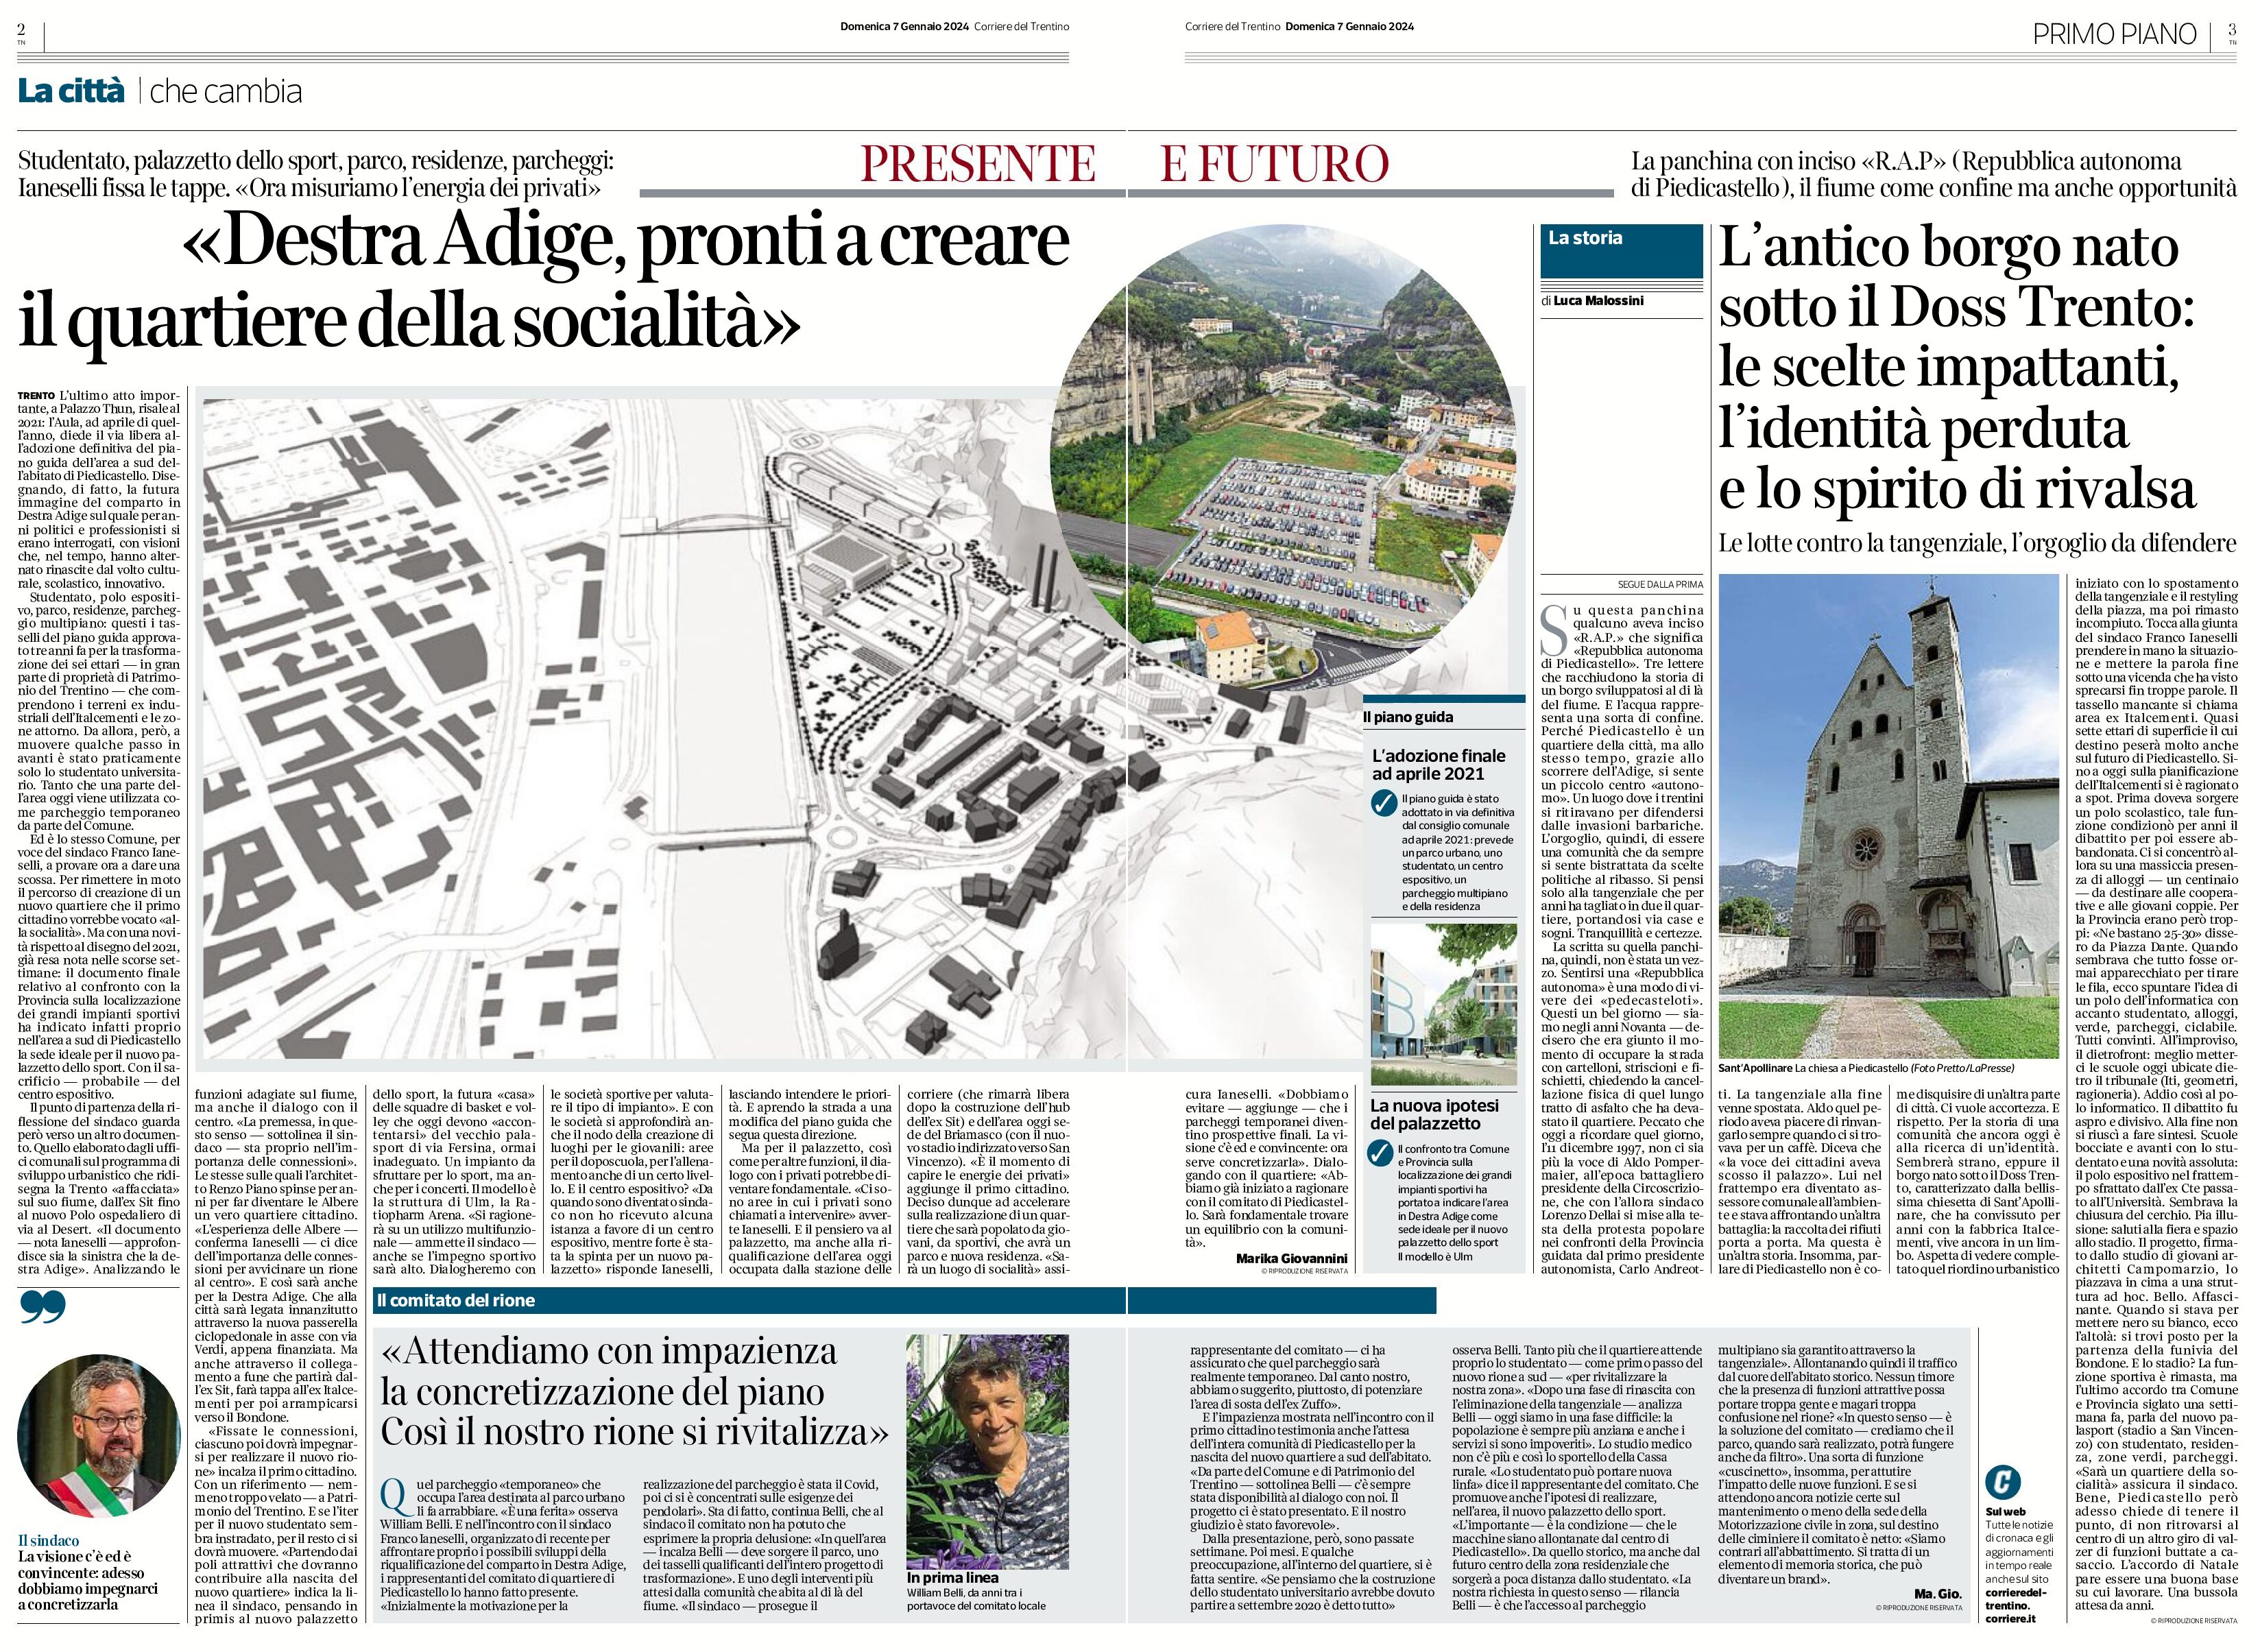 Trento: Destra Adige, il quartiere della socialità